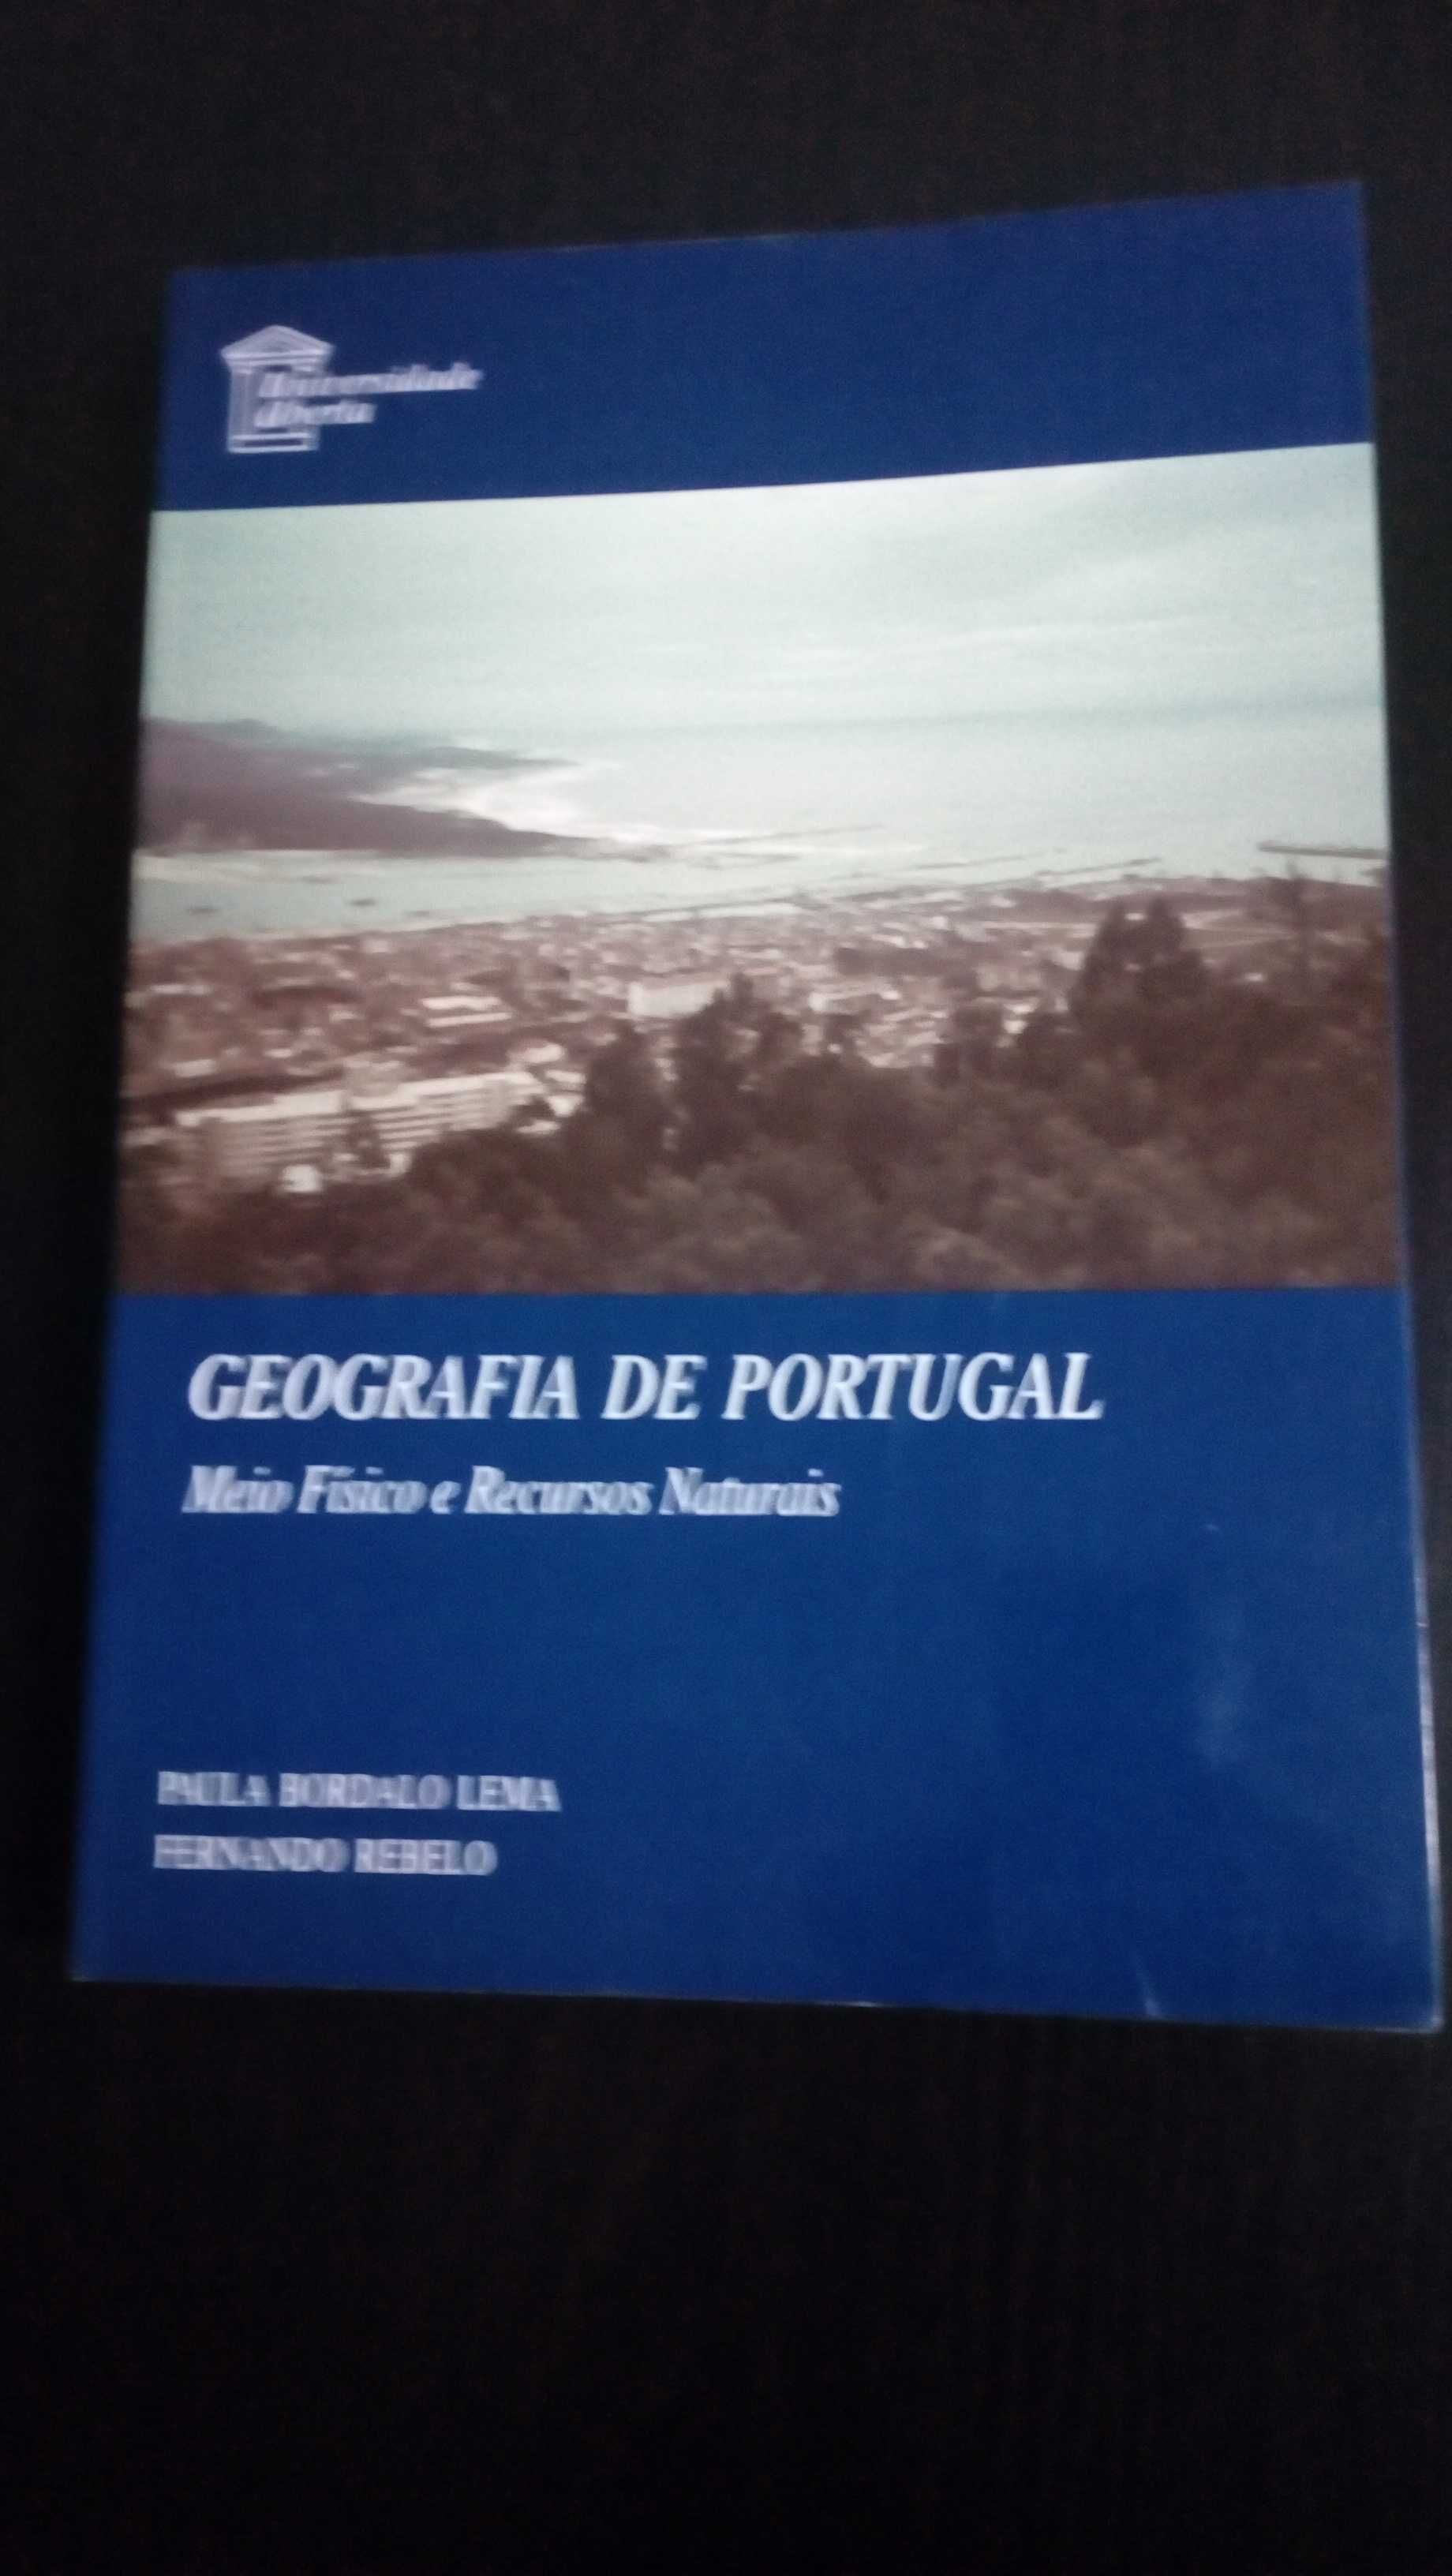 Geografia de Portugal - meio físico e recursos naturais